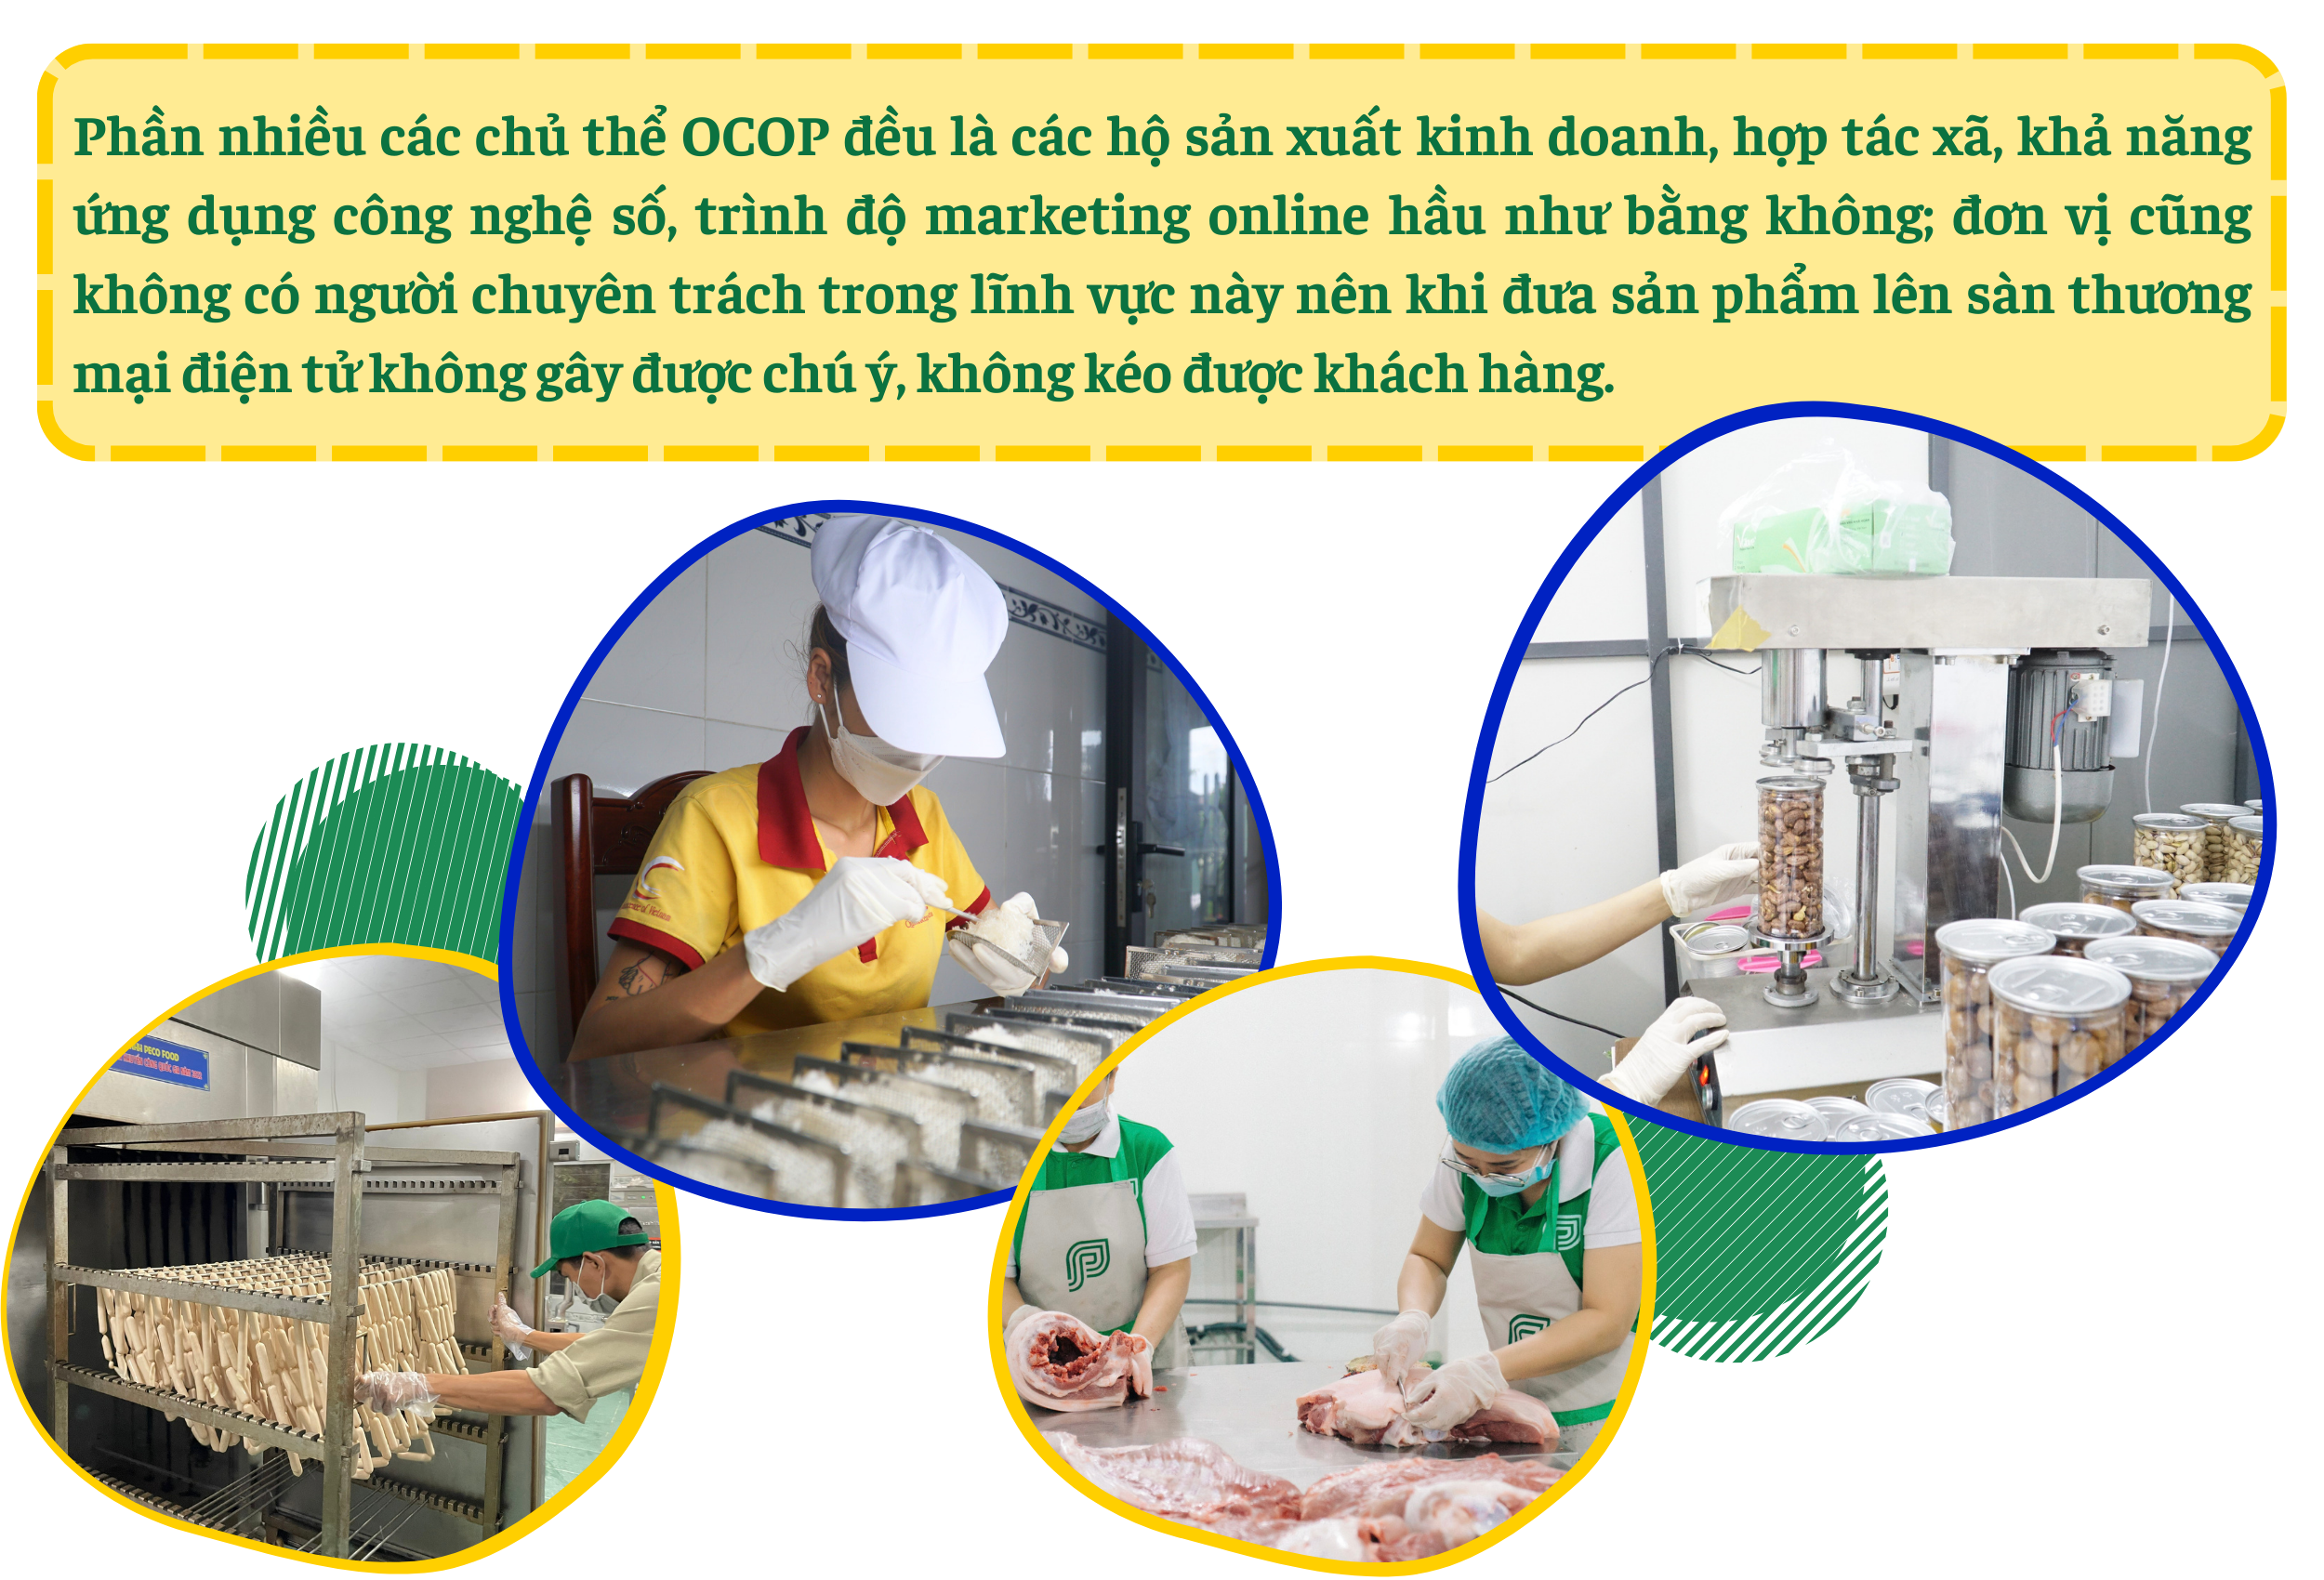 Tiêu thụ sản phẩm OCOP Đà Nẵng trên môi trường số: Còn nhiều khó khăn